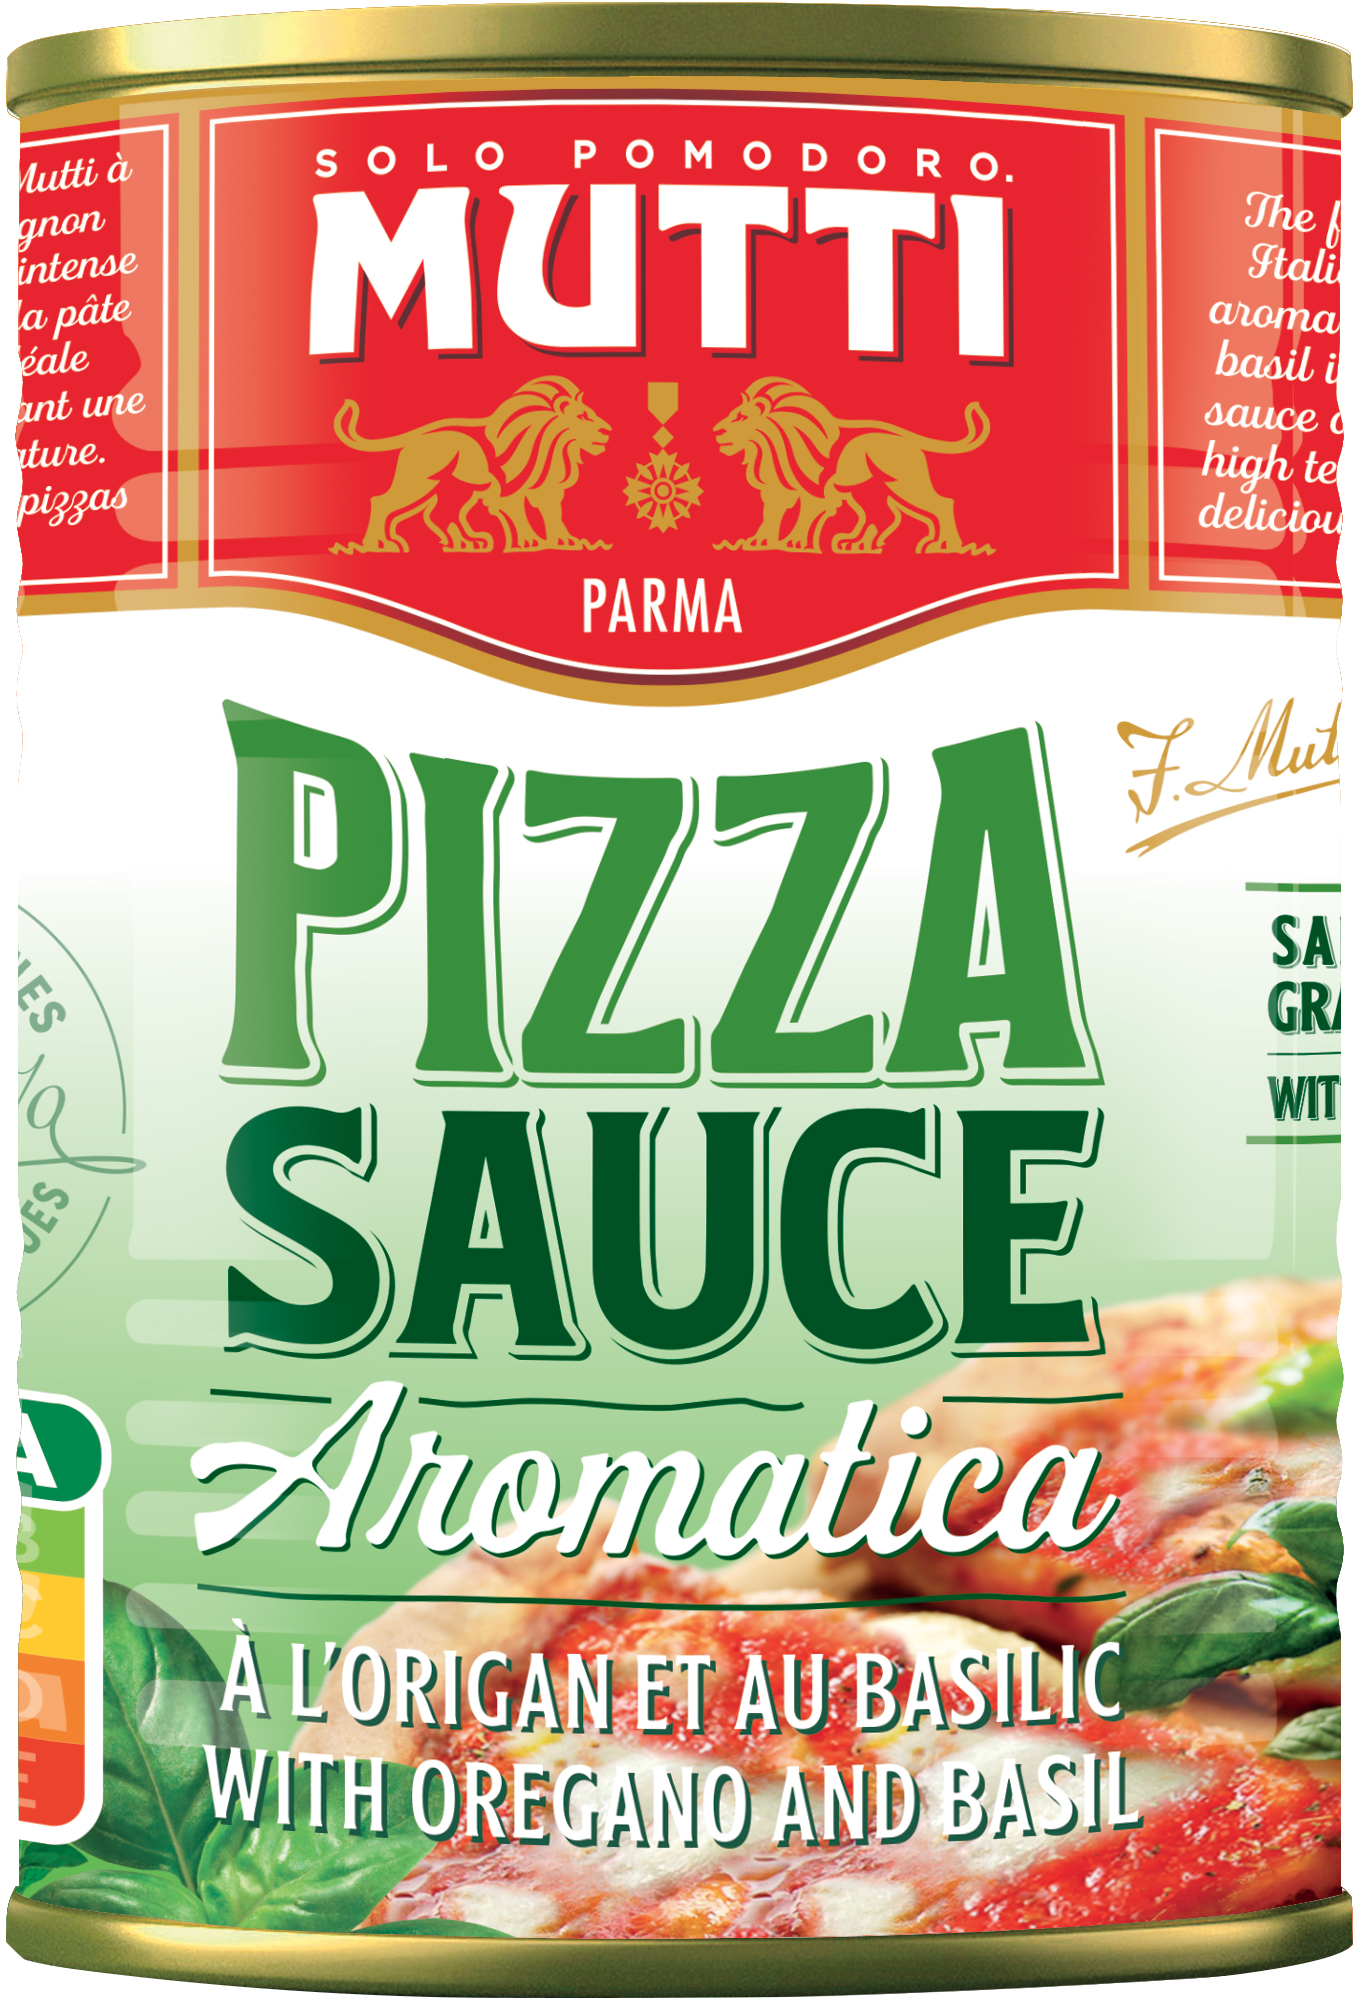 mutti томатный соус для пиццы ароматизированный 400 г купить фото 5